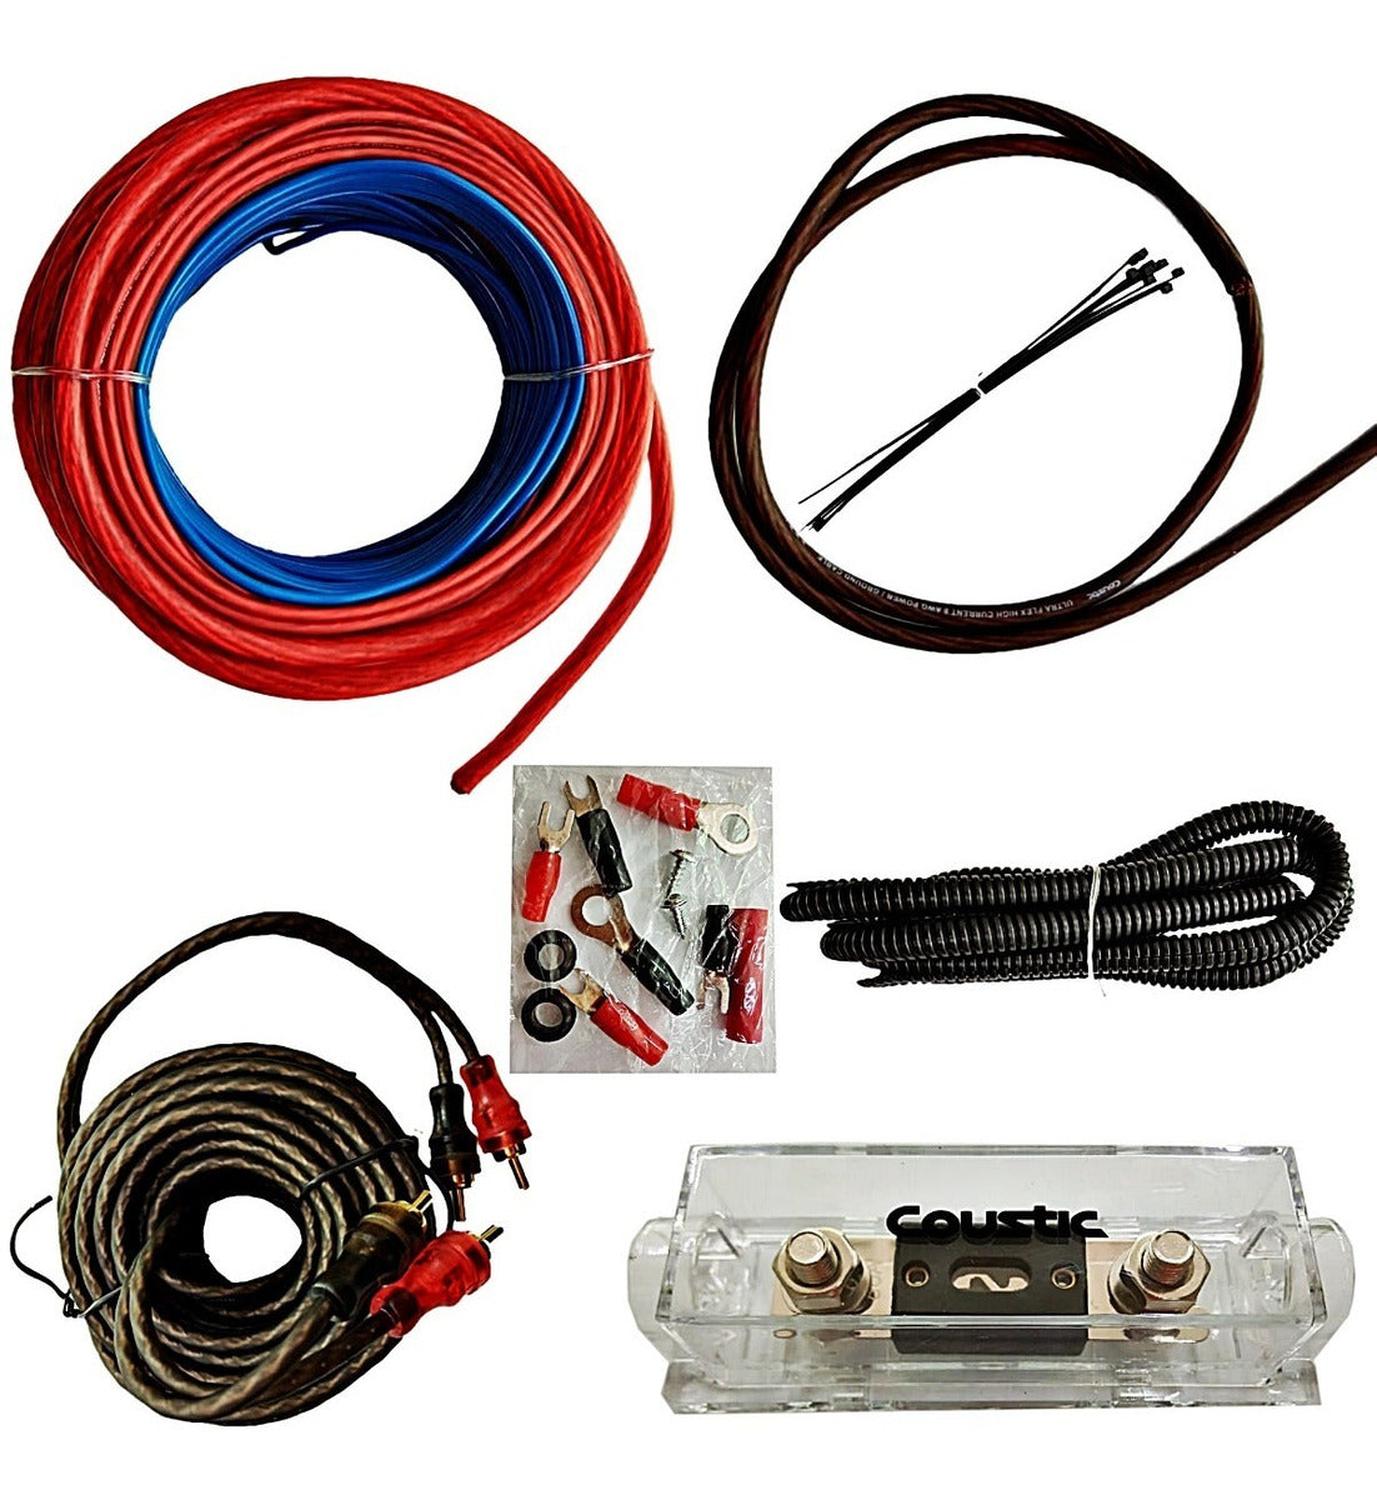 Kit de Cableado para Instalación de Amplificador Coustic CO-KIT8